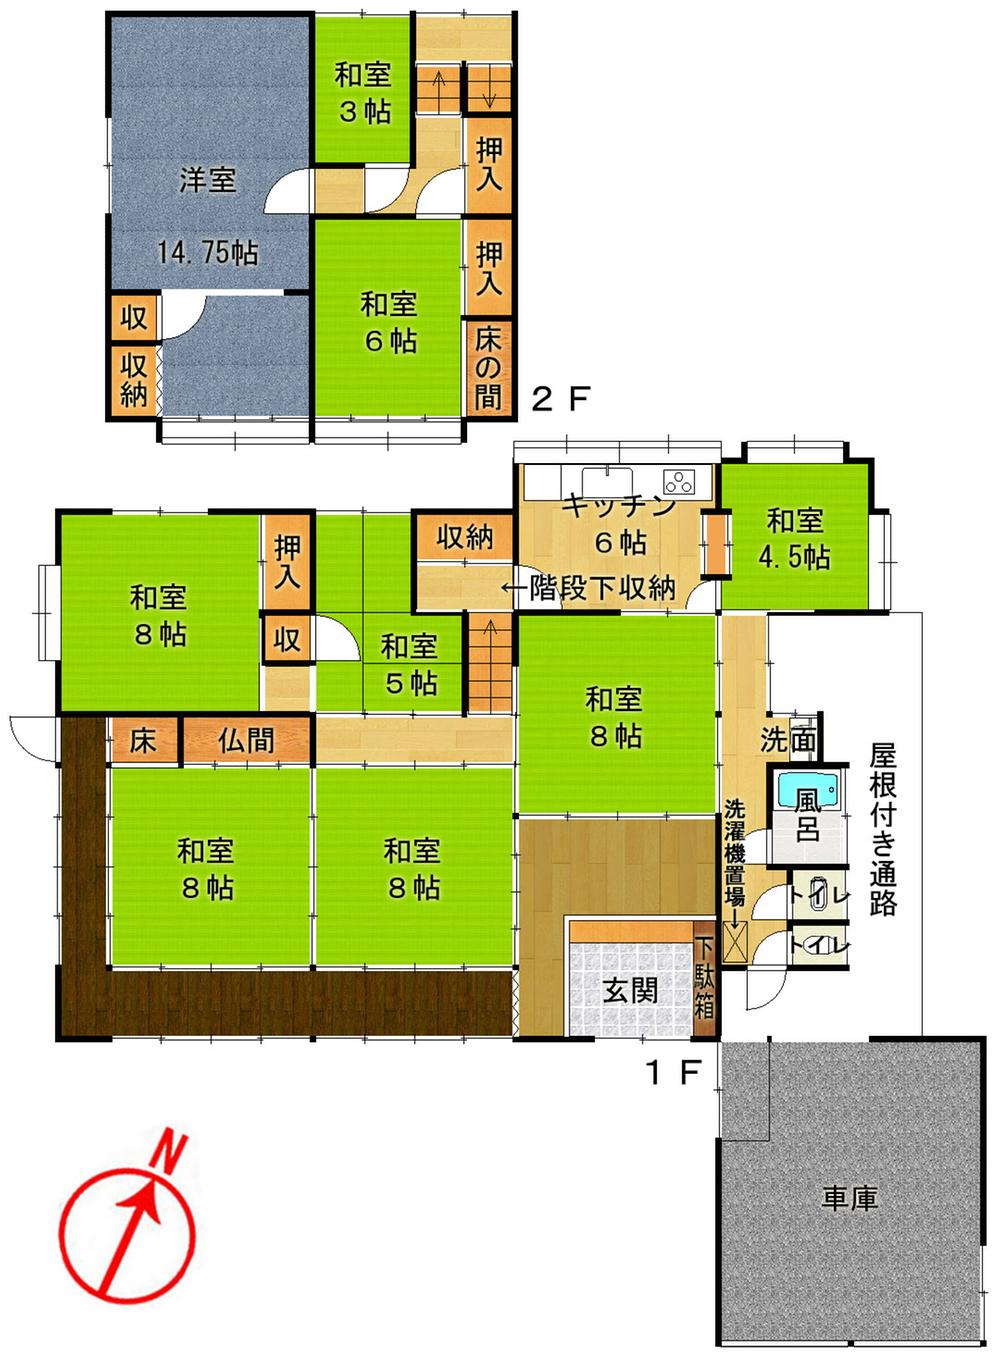 Floor plan. 4.5 million yen, 8DK, Land area 568 sq m , Building area 187.2 sq m